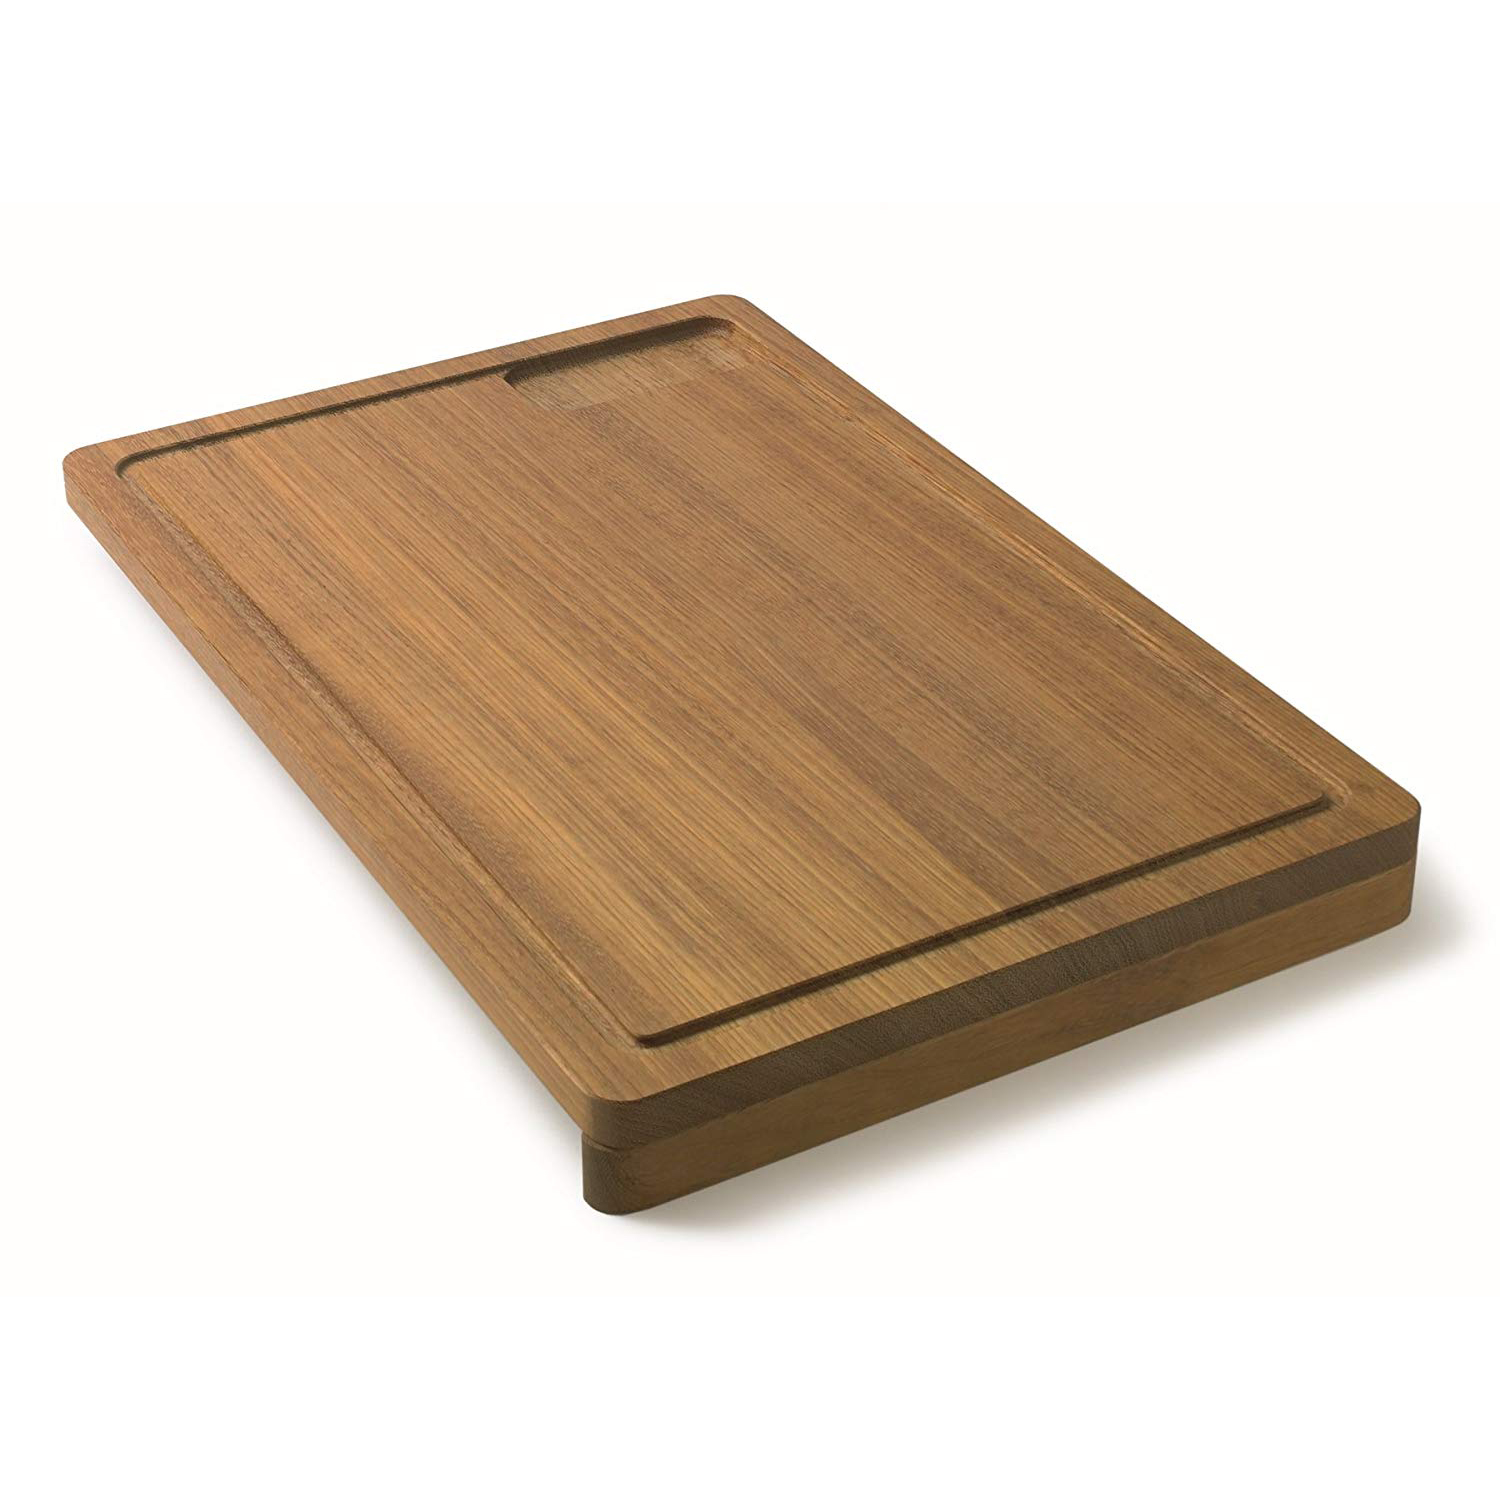 Oceania 14-1/2x21-7/8" Solid Wood Cutting Board